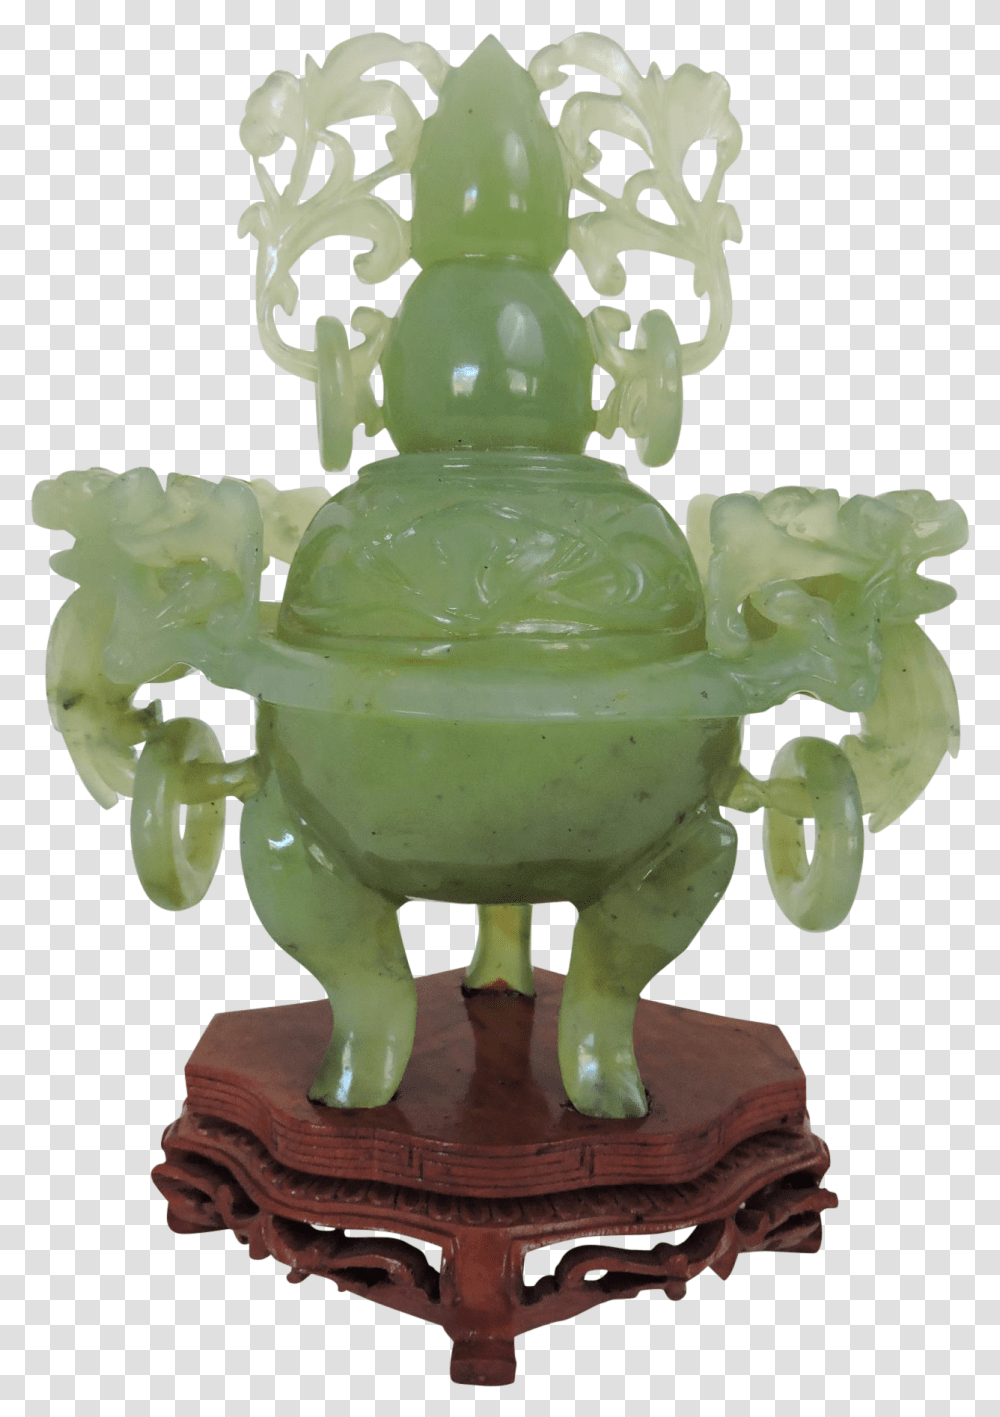 Censor, Green, Figurine, Alien, Toy Transparent Png